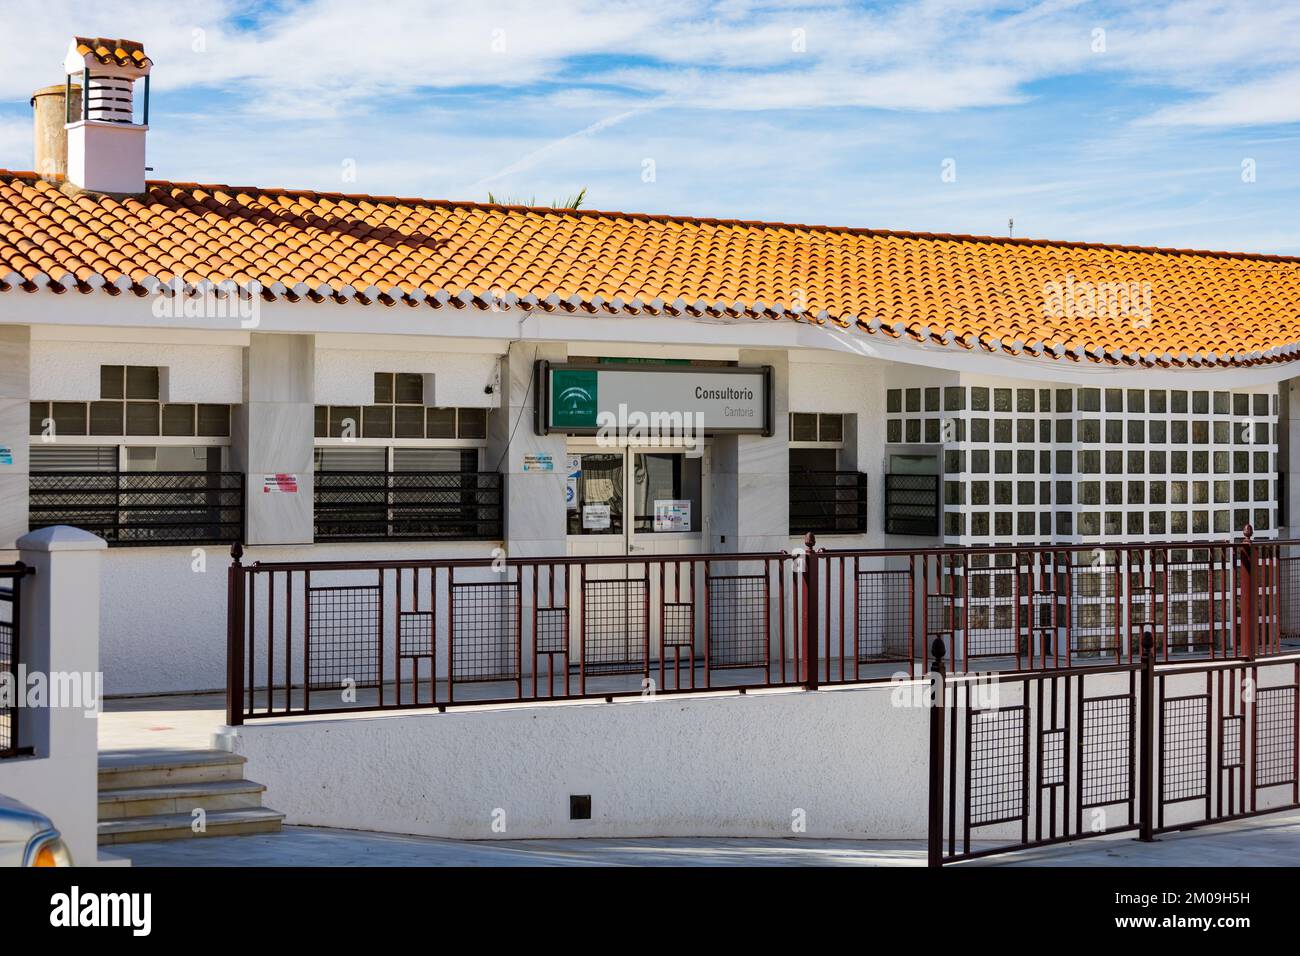 Consultorio, Città della Cantoria, Valle dell'Almanzora, provincia dell'Almeria, Andalusia, Spagna Foto Stock